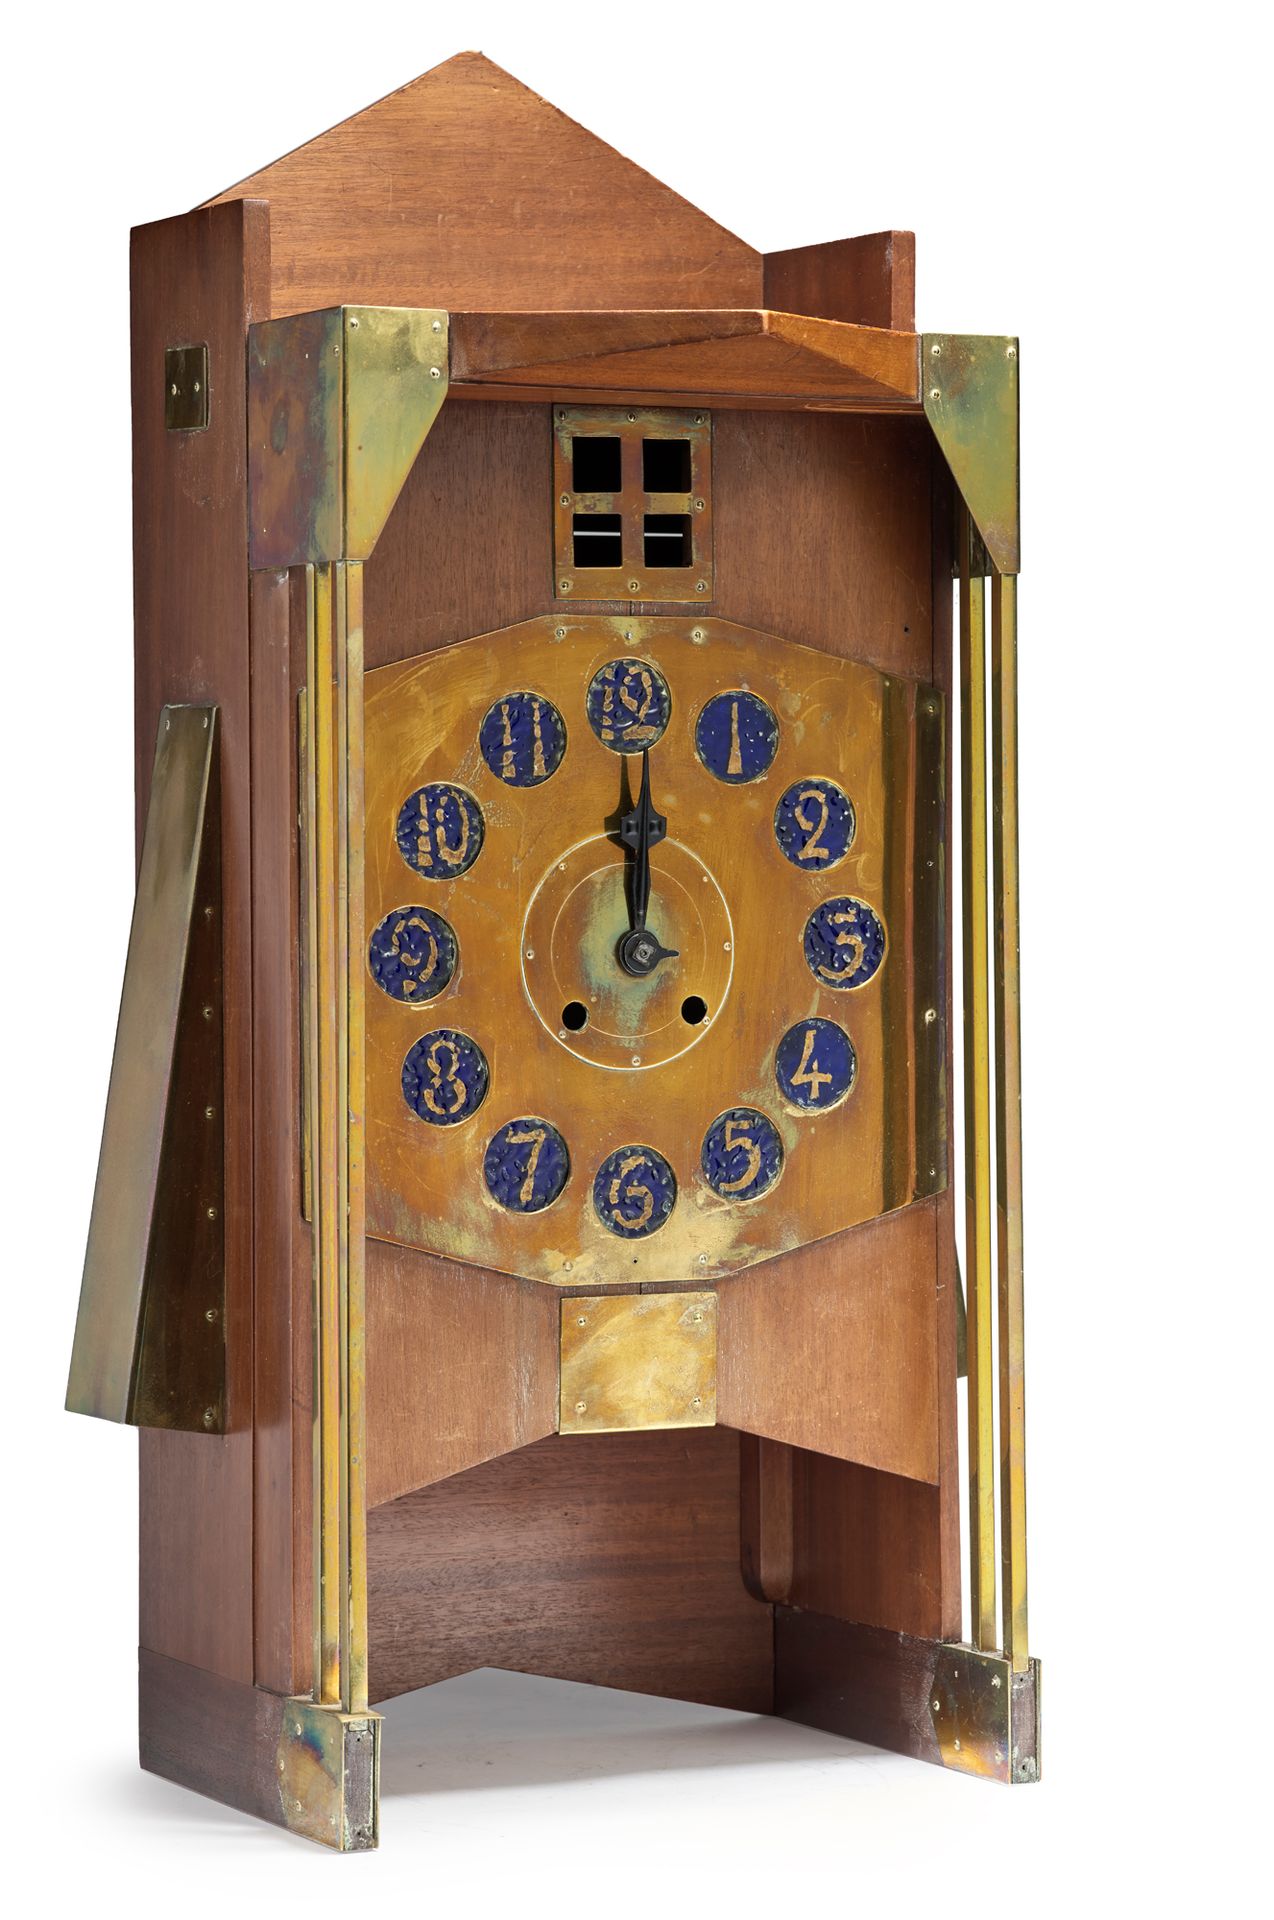 Gustave Serrurier-Bovy (1858-1910) 
Wanduhr, genannt "Moulin-Uhr", mit einem kub&hellip;